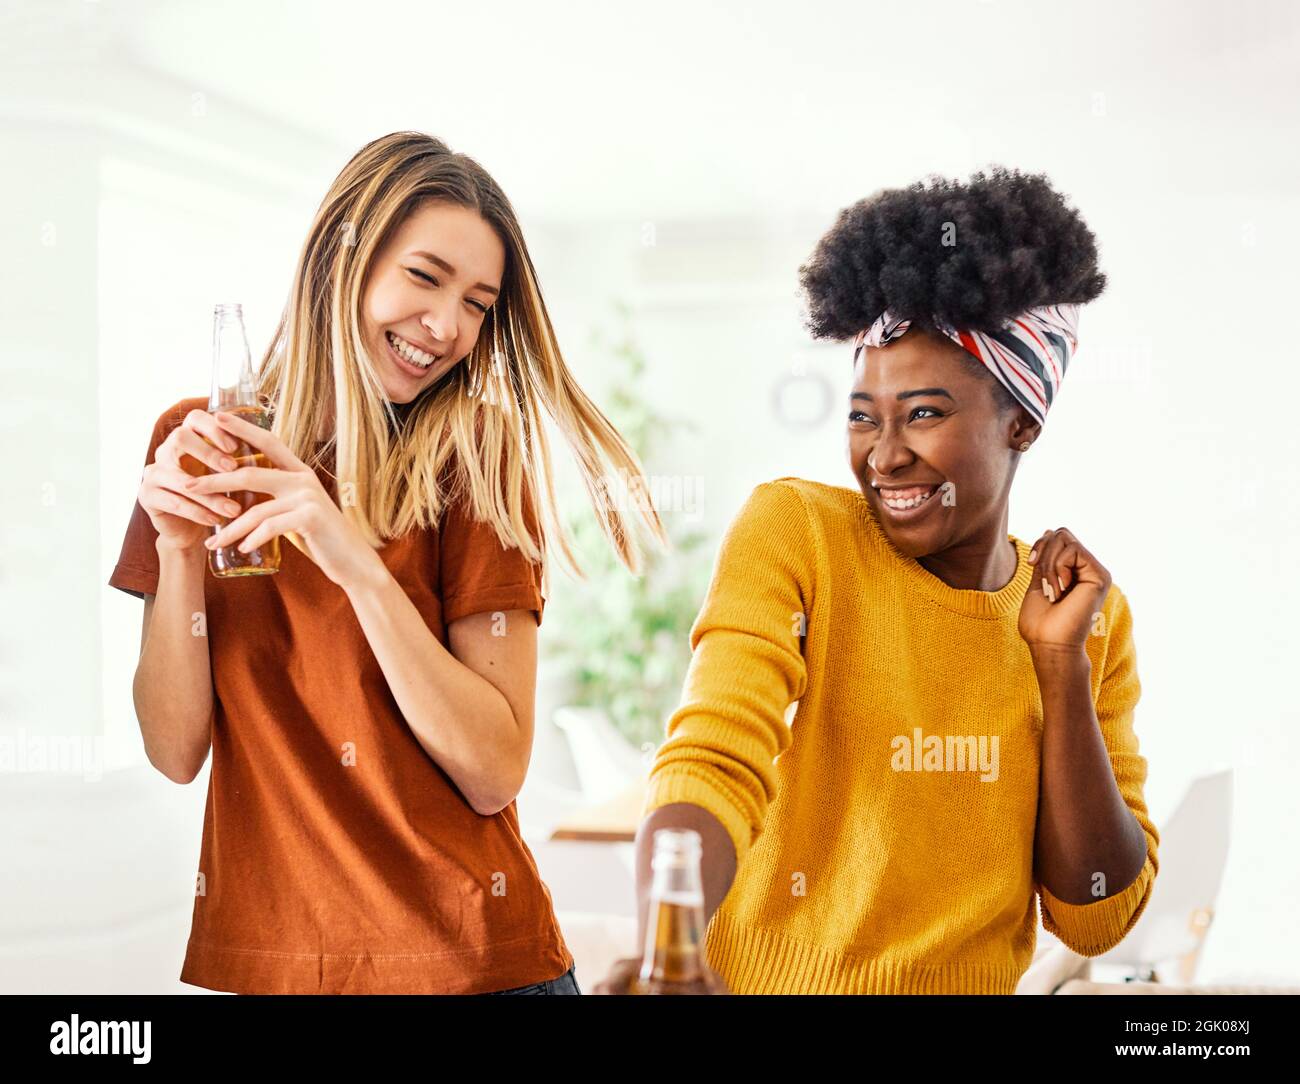 Mädchen Party tanzen trinken Bier Flasche Spaß Freund Pflege kostenlos Stockfoto